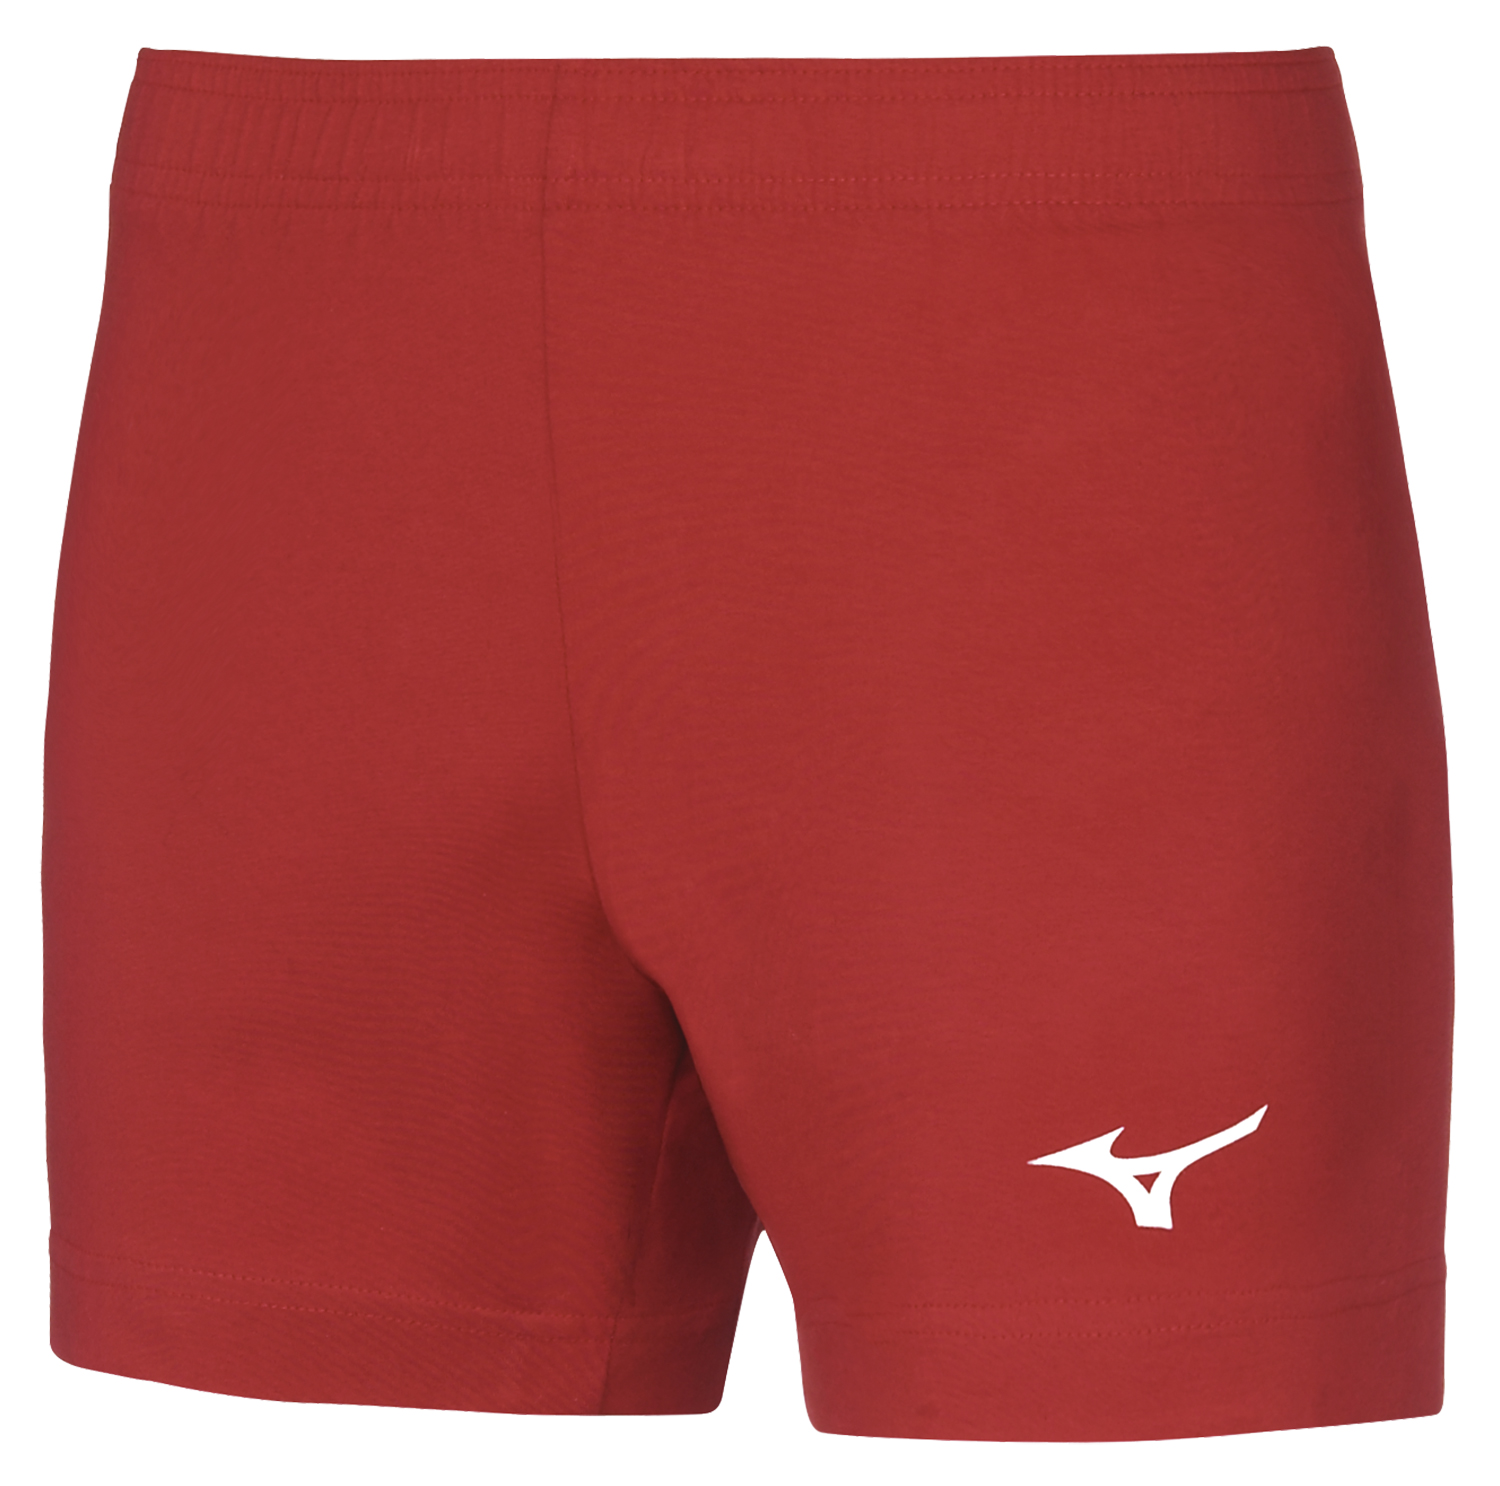 Спортивные шорты мужские Mizuno V2EB7204-62 красные XL